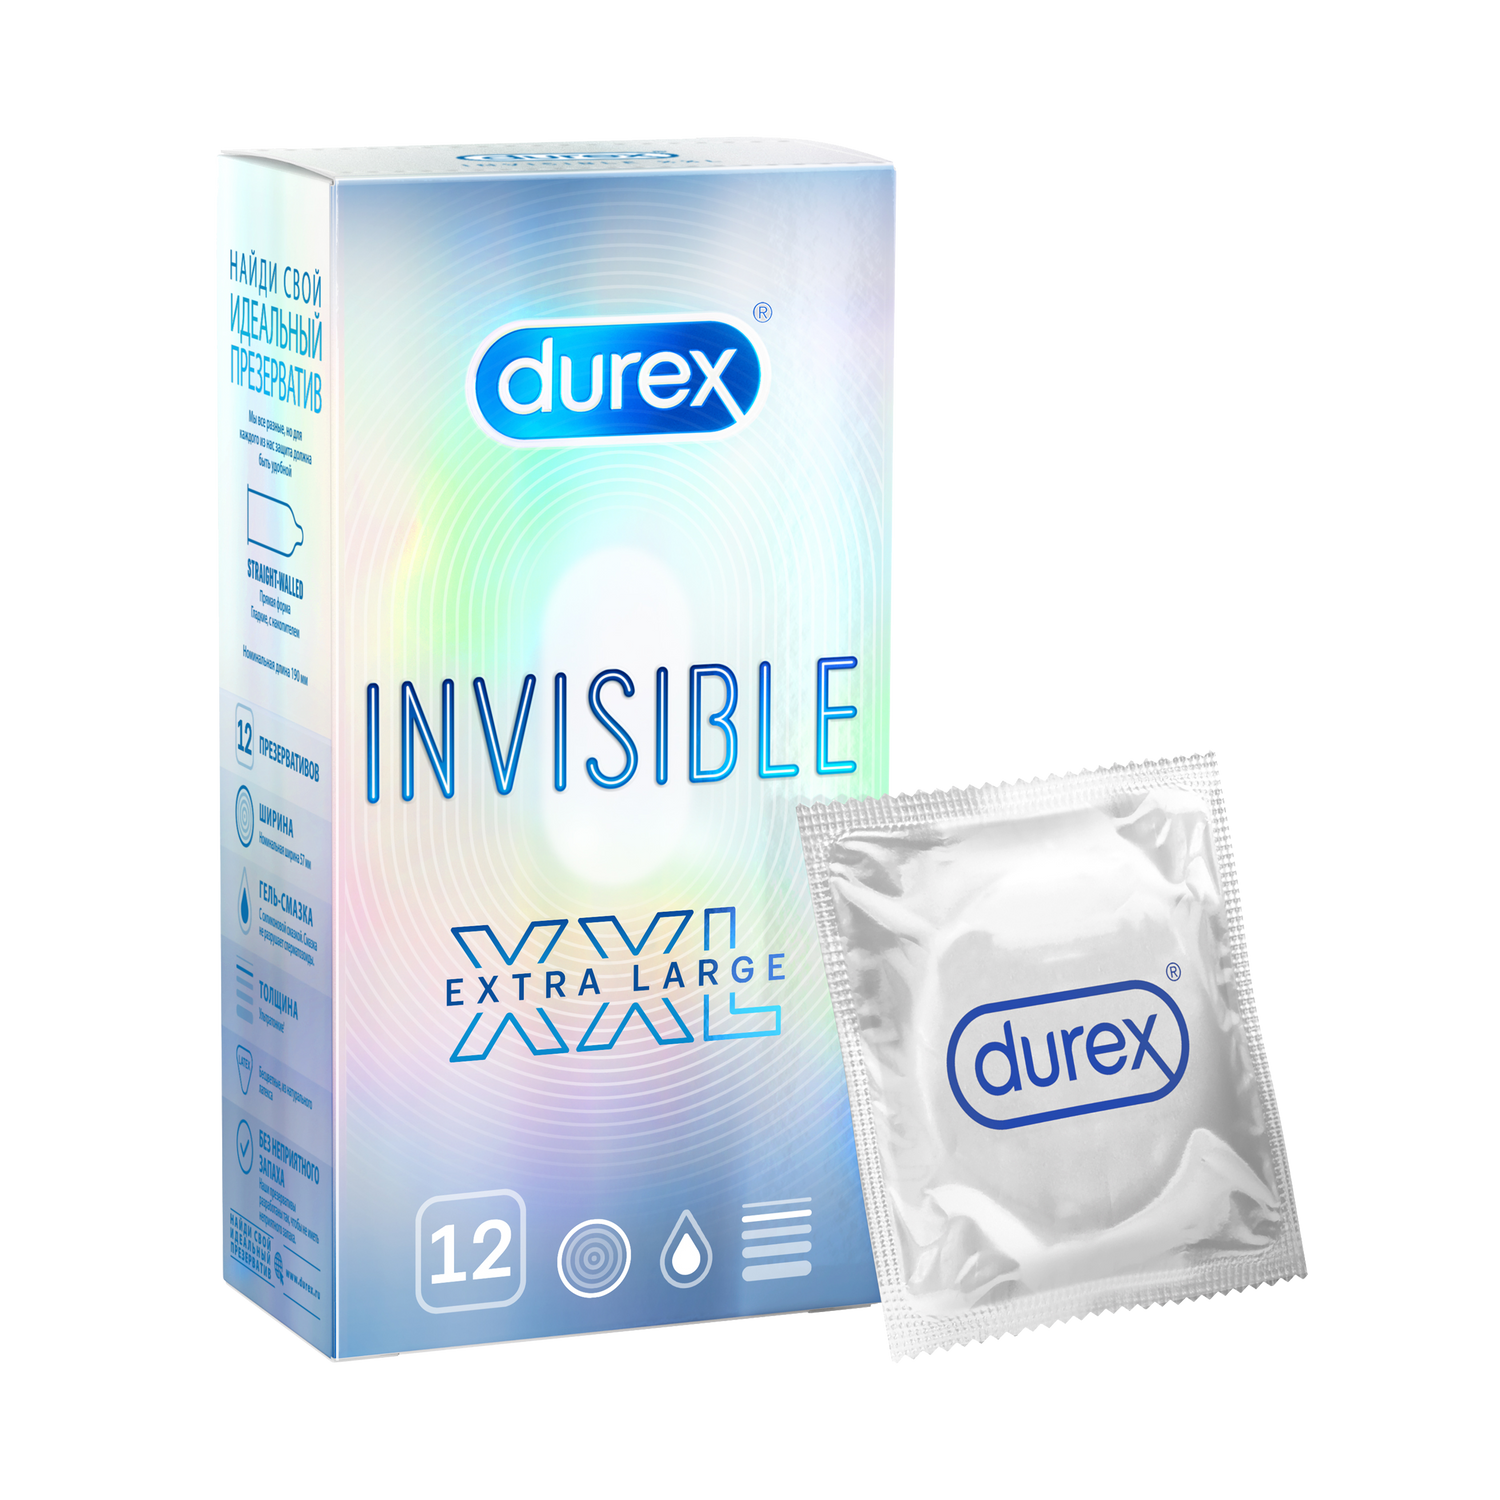 Durex Invisible XXL, презервативы, 12 шт. культурология имя собственное